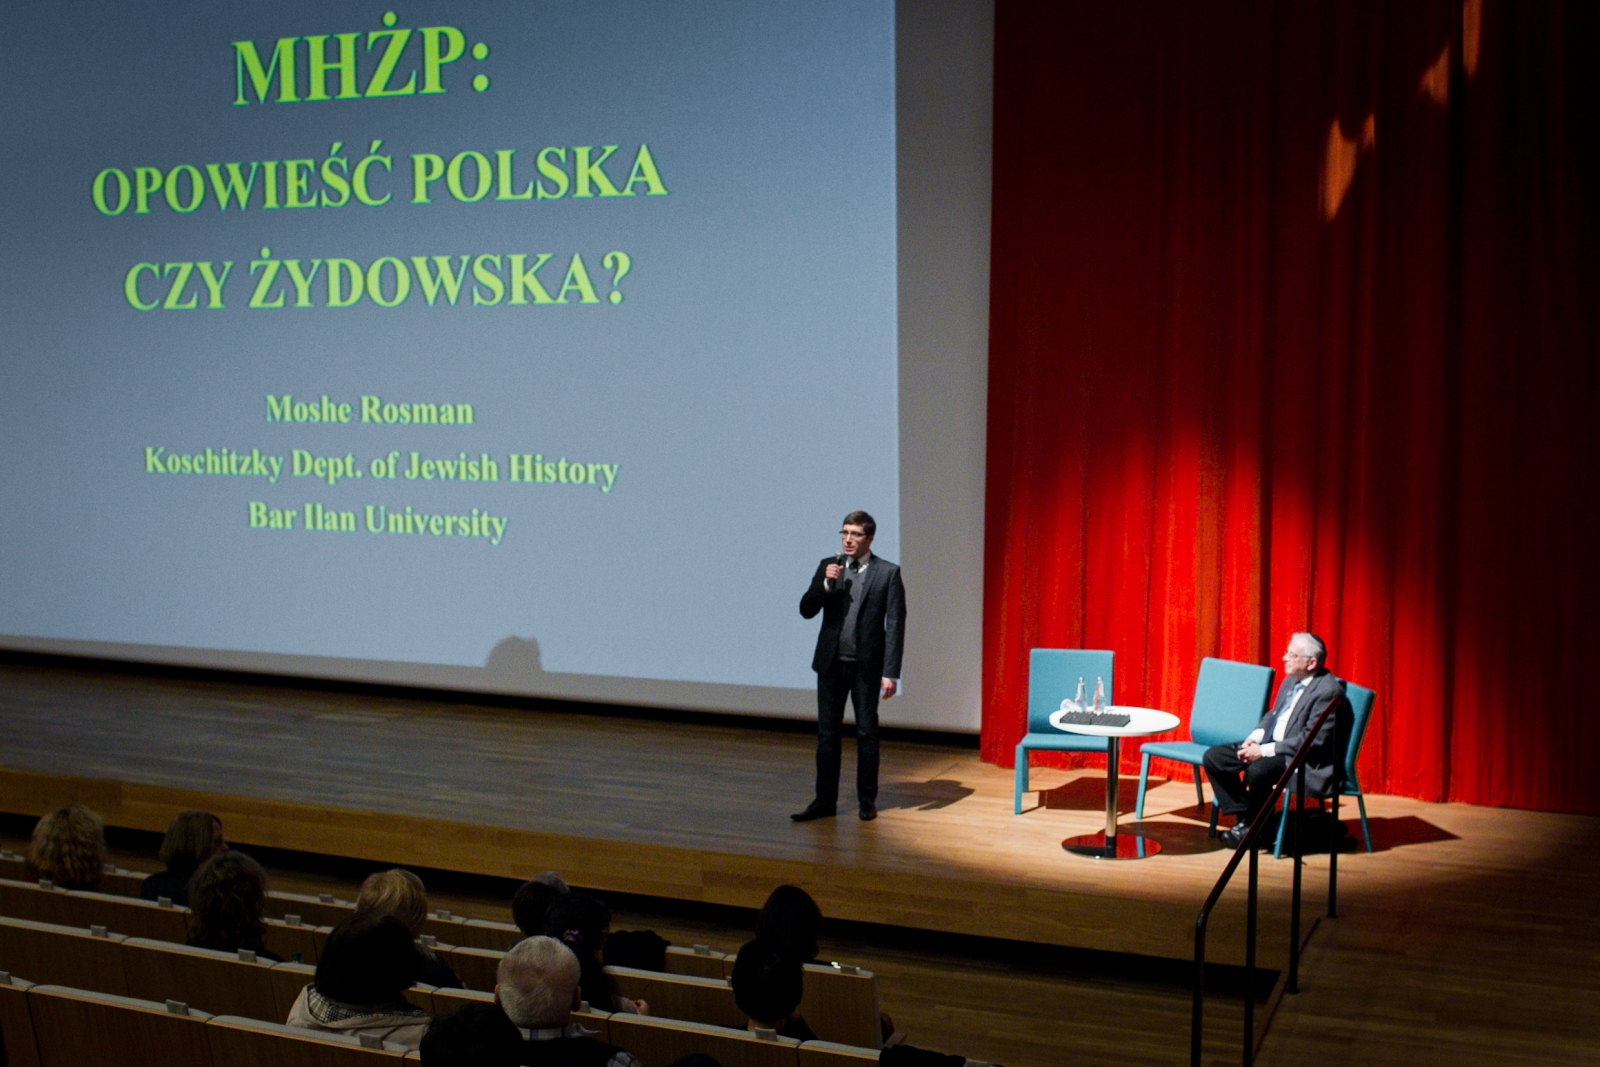 Mężczyzna stoi na scenie i wygłasza prezentację "MHŻP: Opowieść polska czy żydowska?".